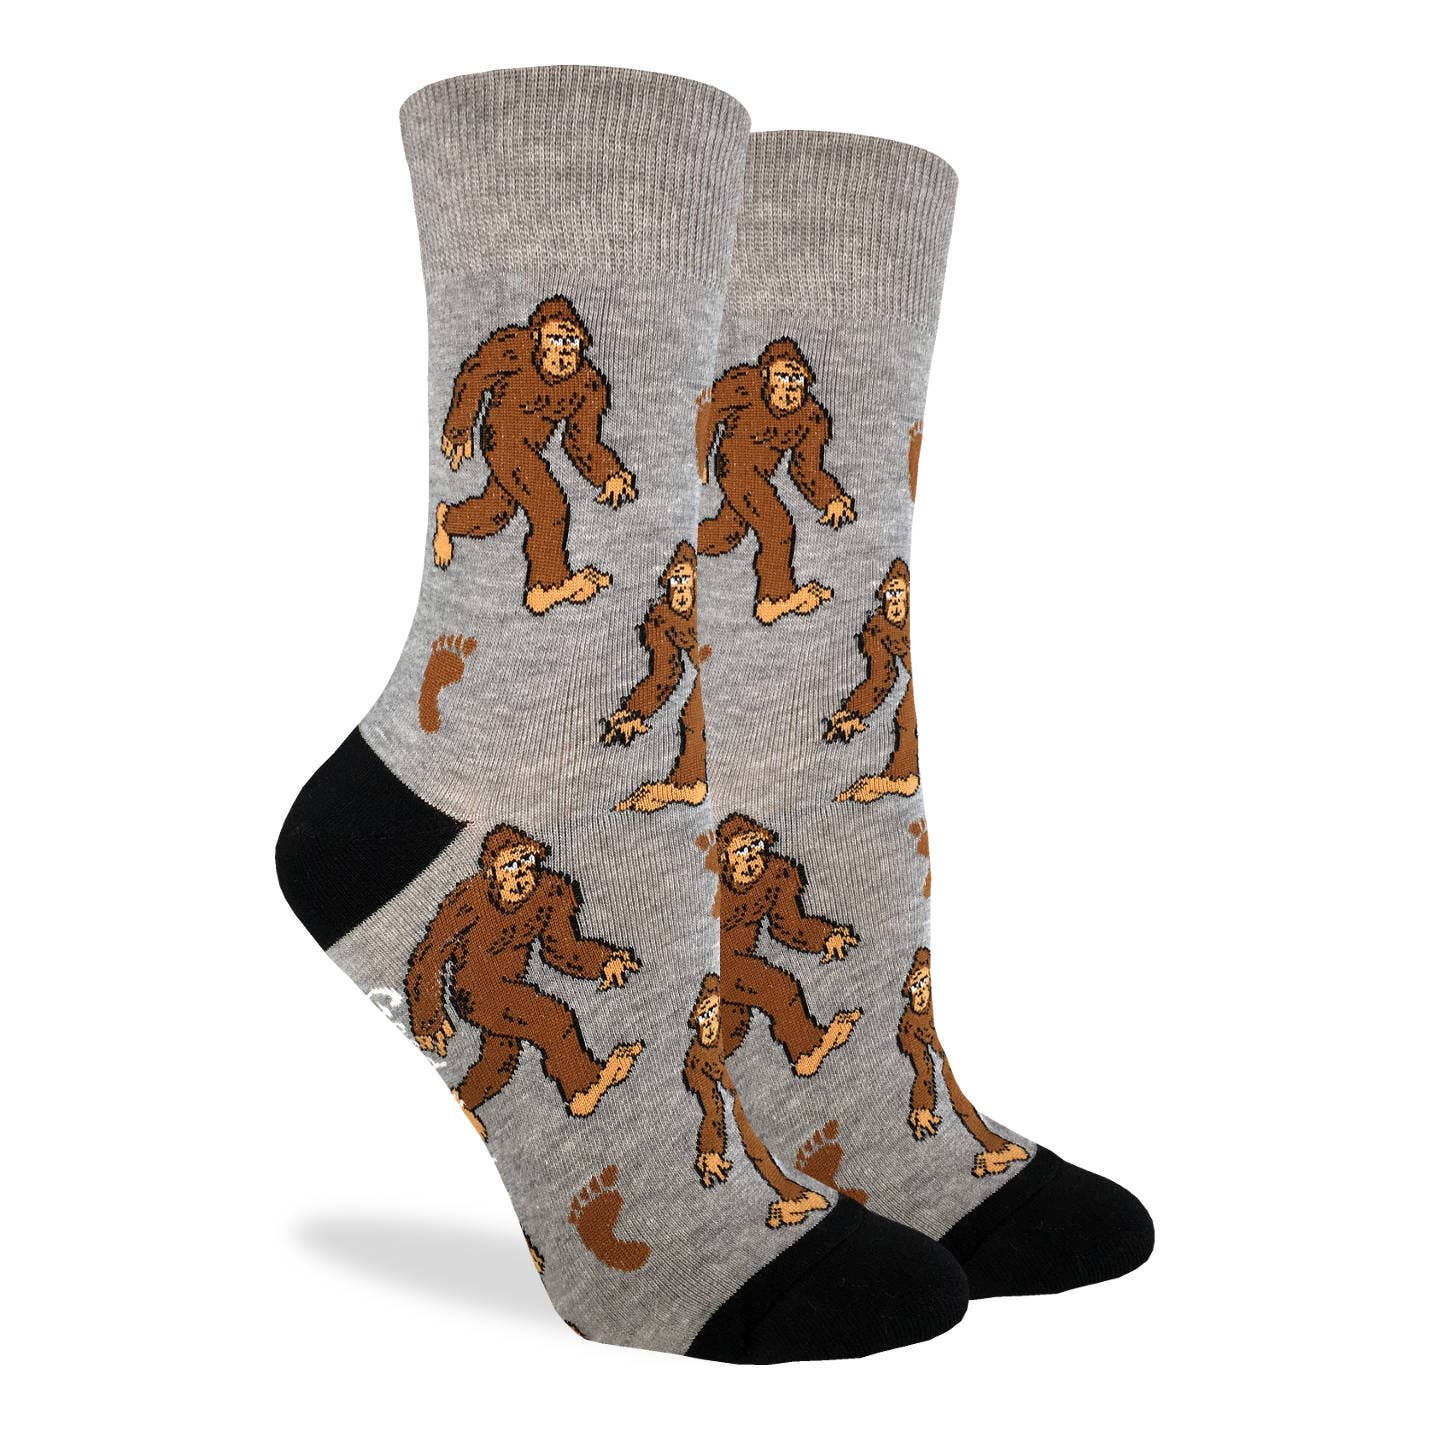 Adult Bigfoot Socks